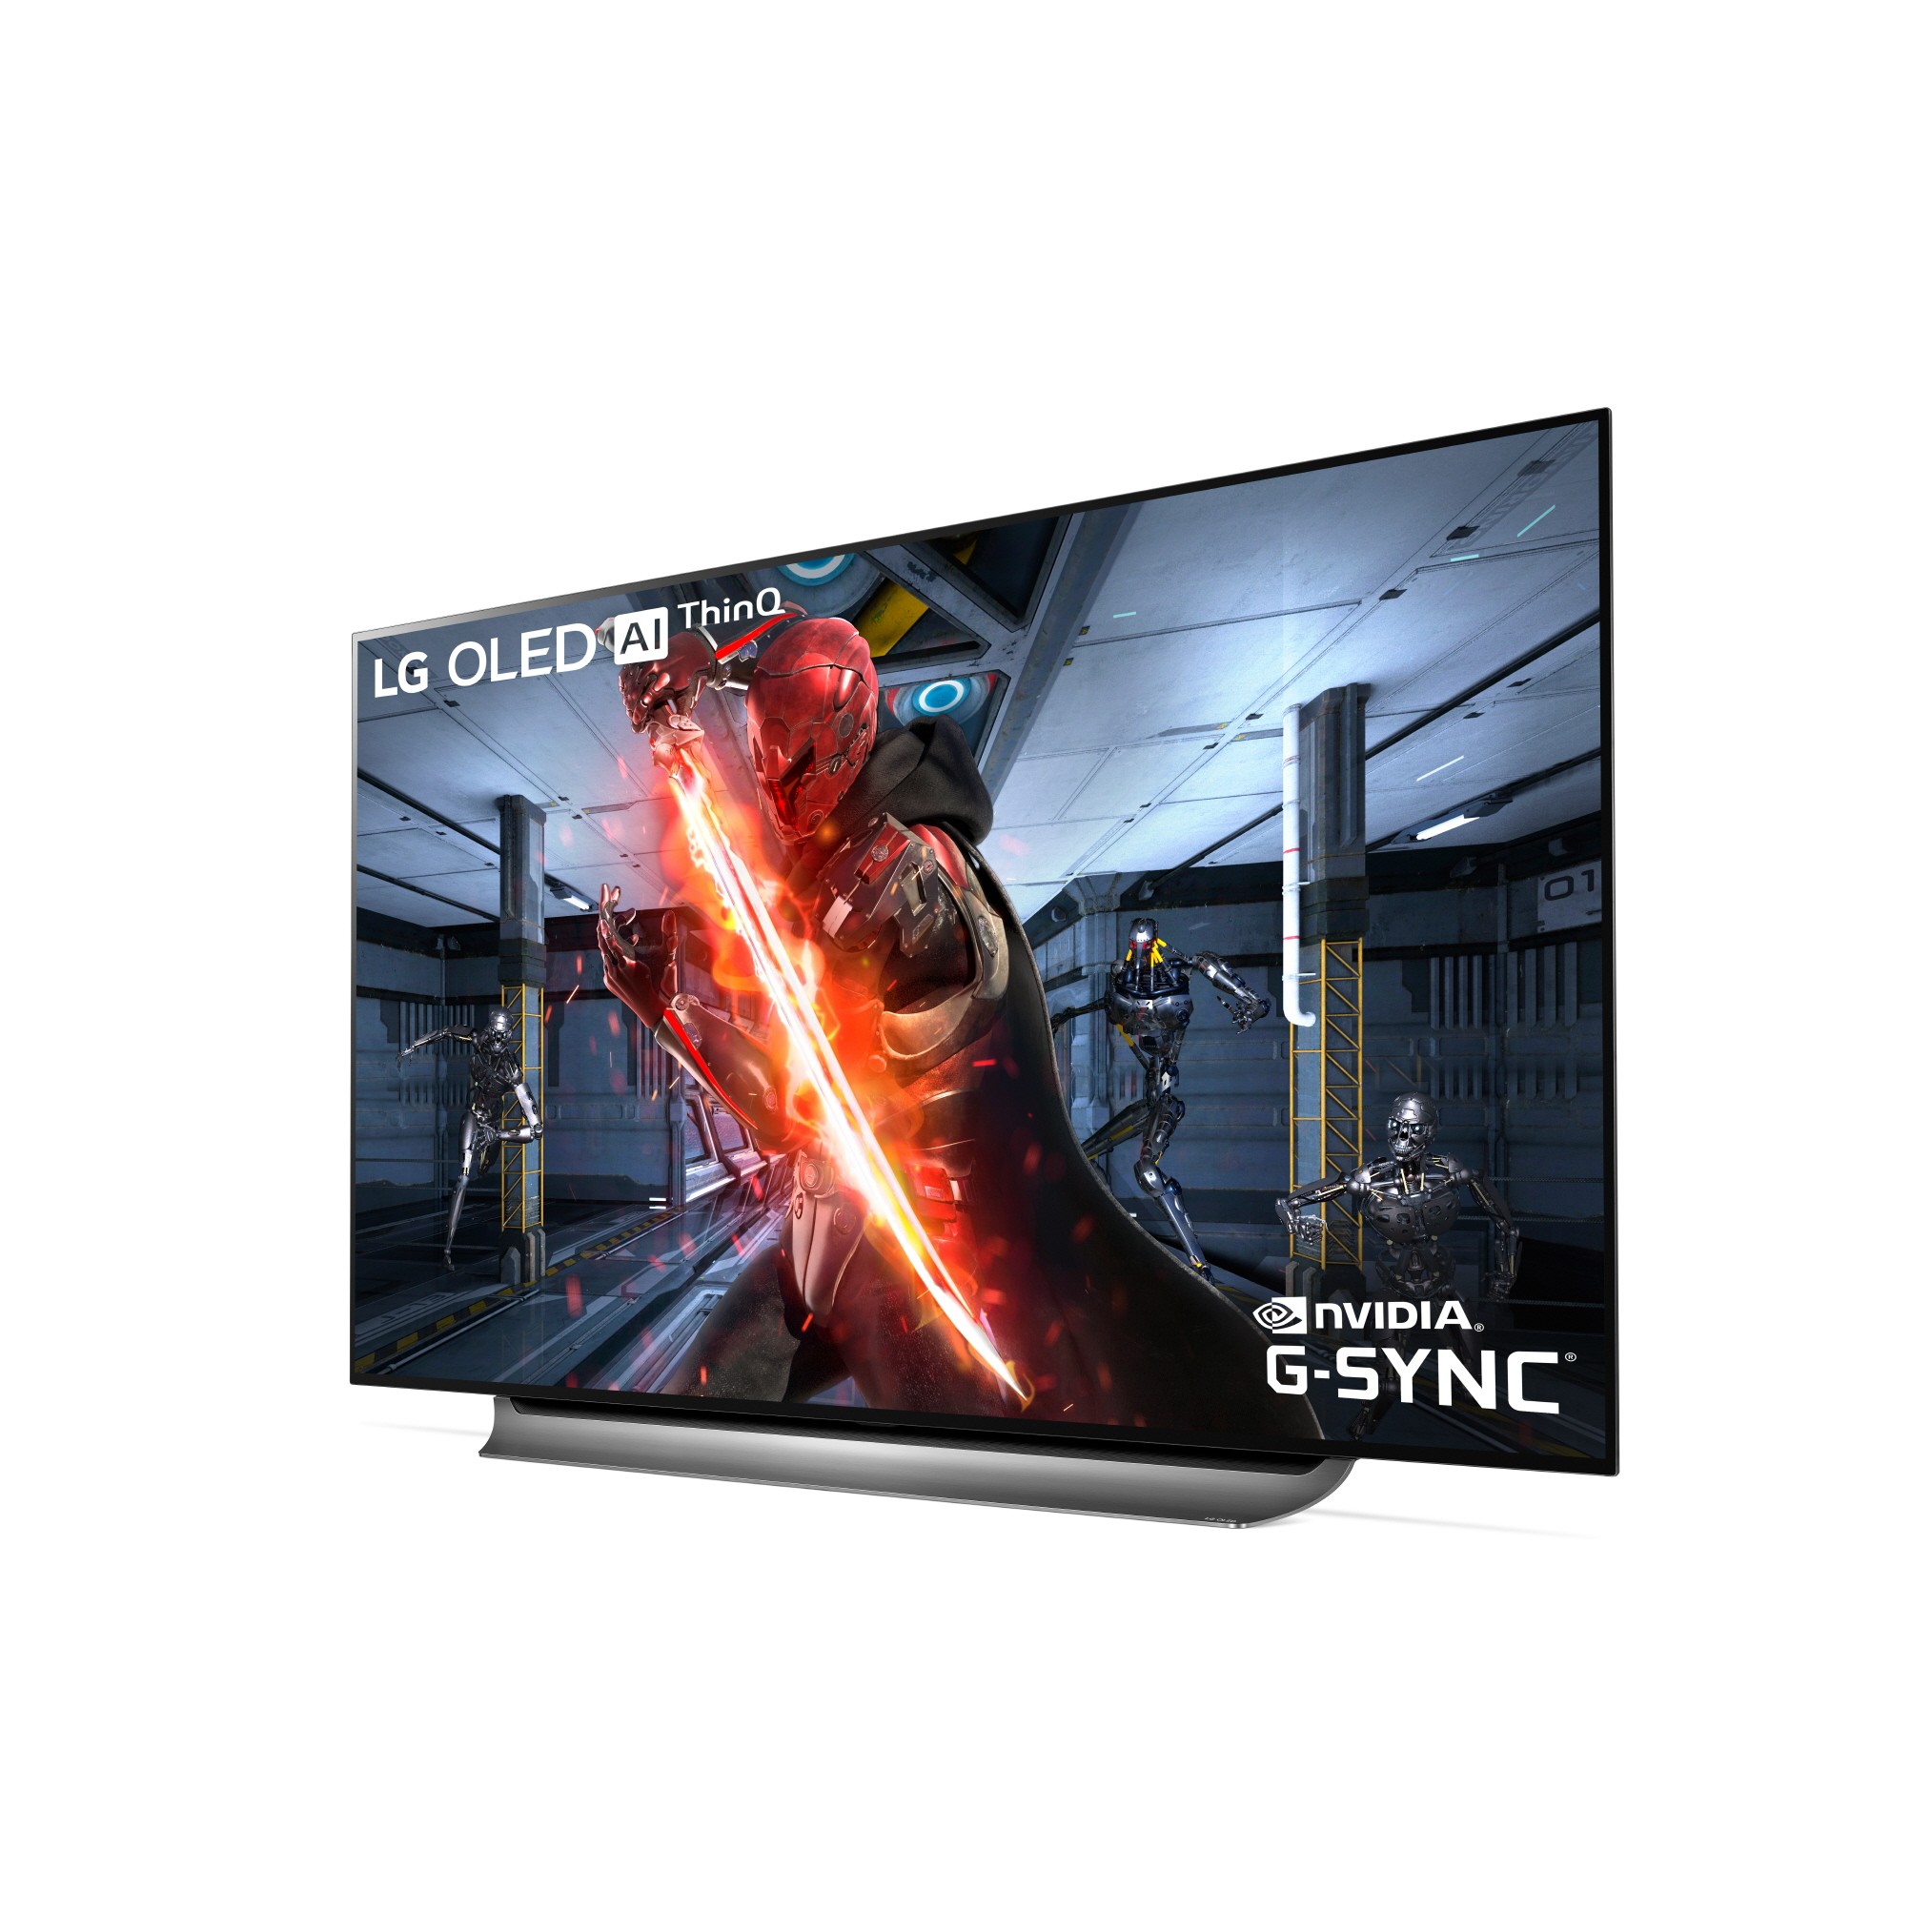 Immagine pubblicata in relazione al seguente contenuto: LG aggiunge il supporto della tecnologia NVIDIA G-SYNC ai televisori OLED 4K | Nome immagine: news29970_LG-OLED-4K-TV-G-SYNC_2.jpg